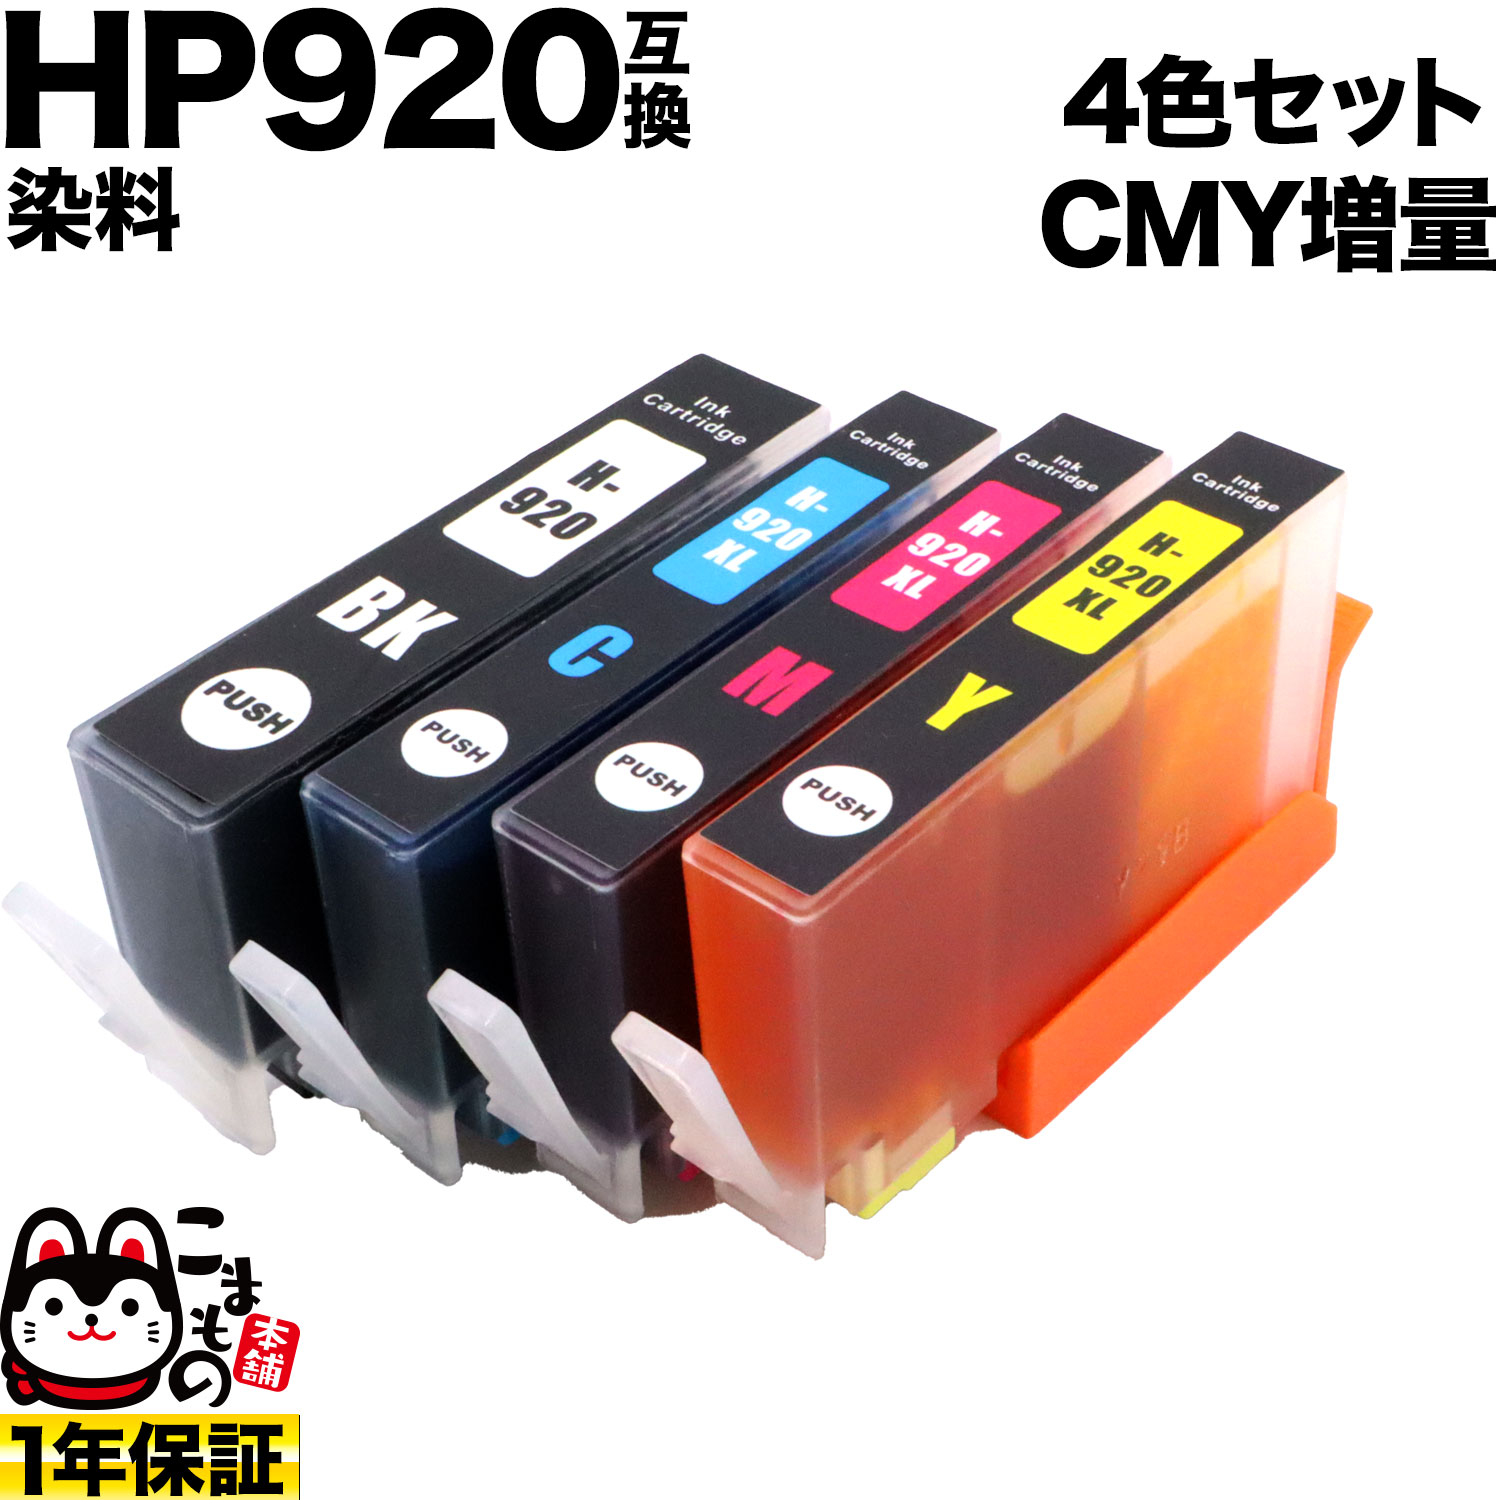 [最終在庫] HP920 HP用 互換インク CMY